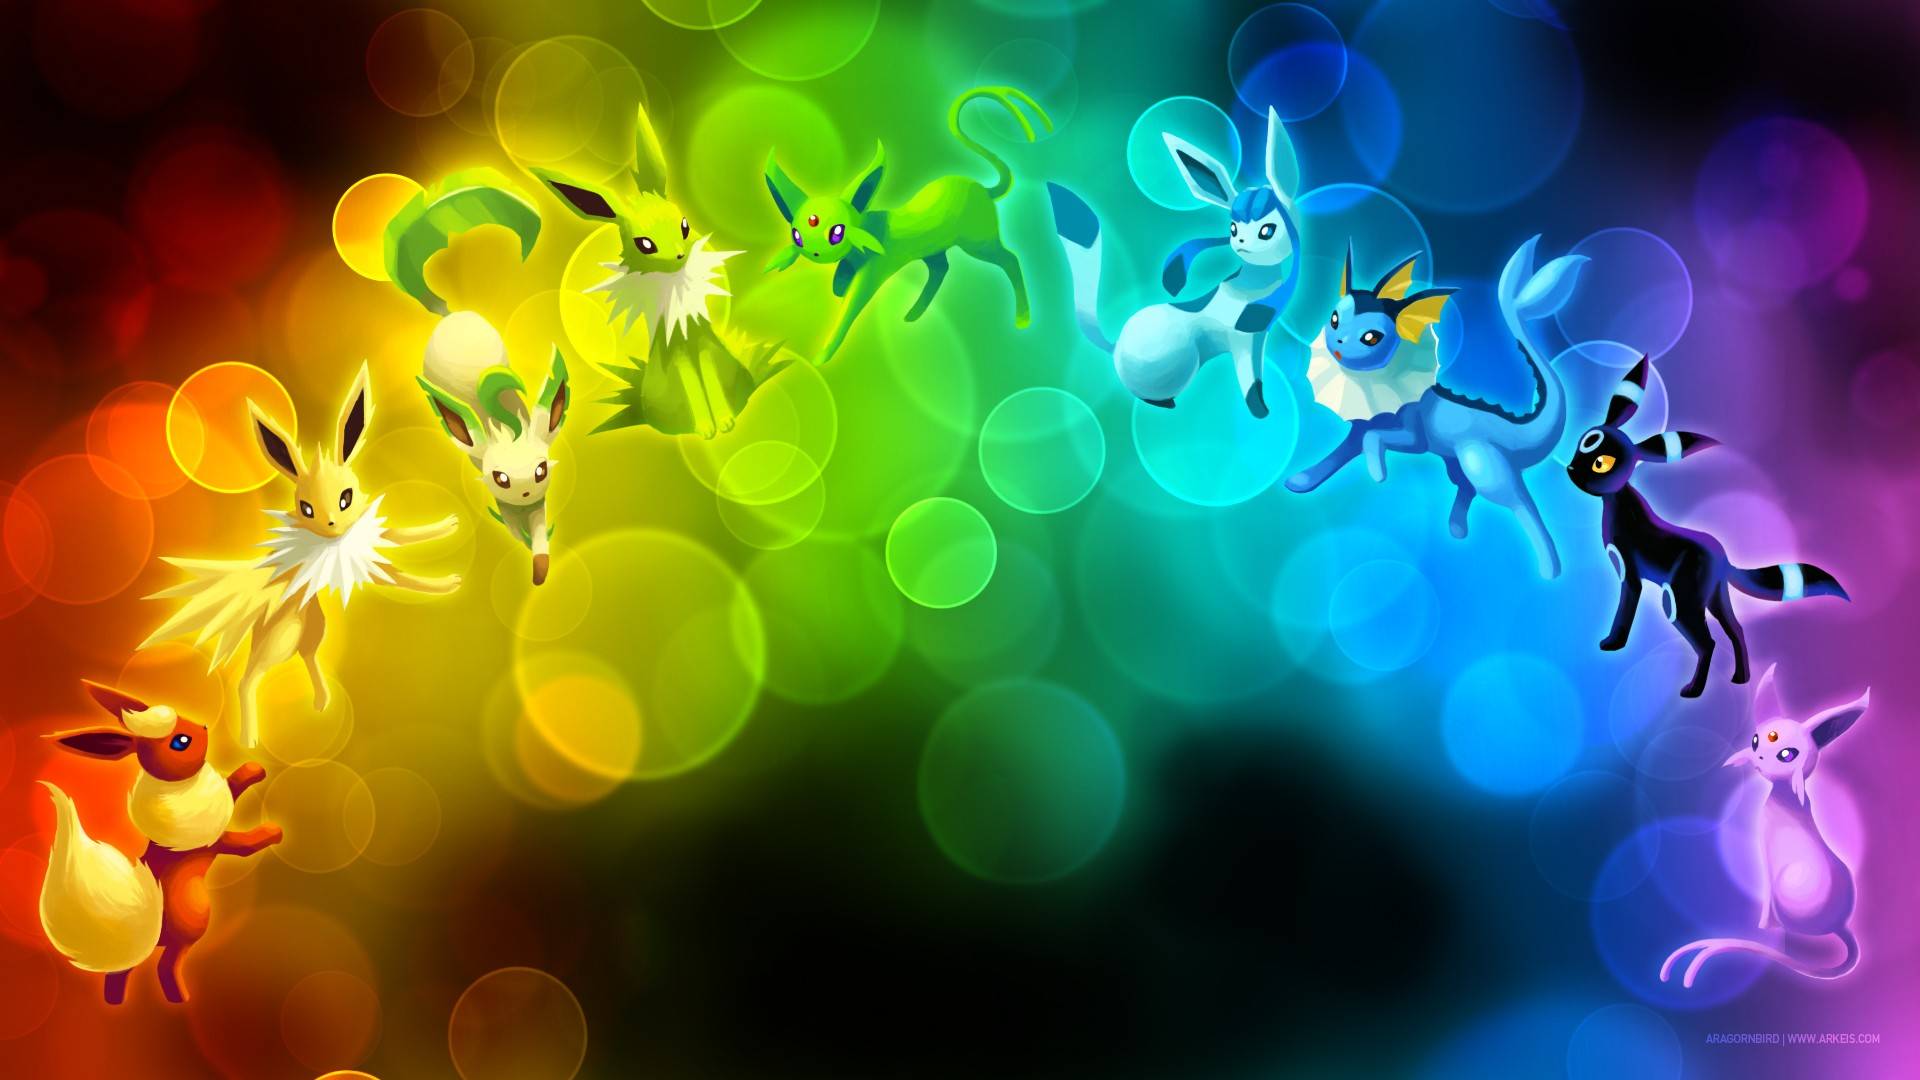 eevee's evolutions gradiants pokemon wallpaper